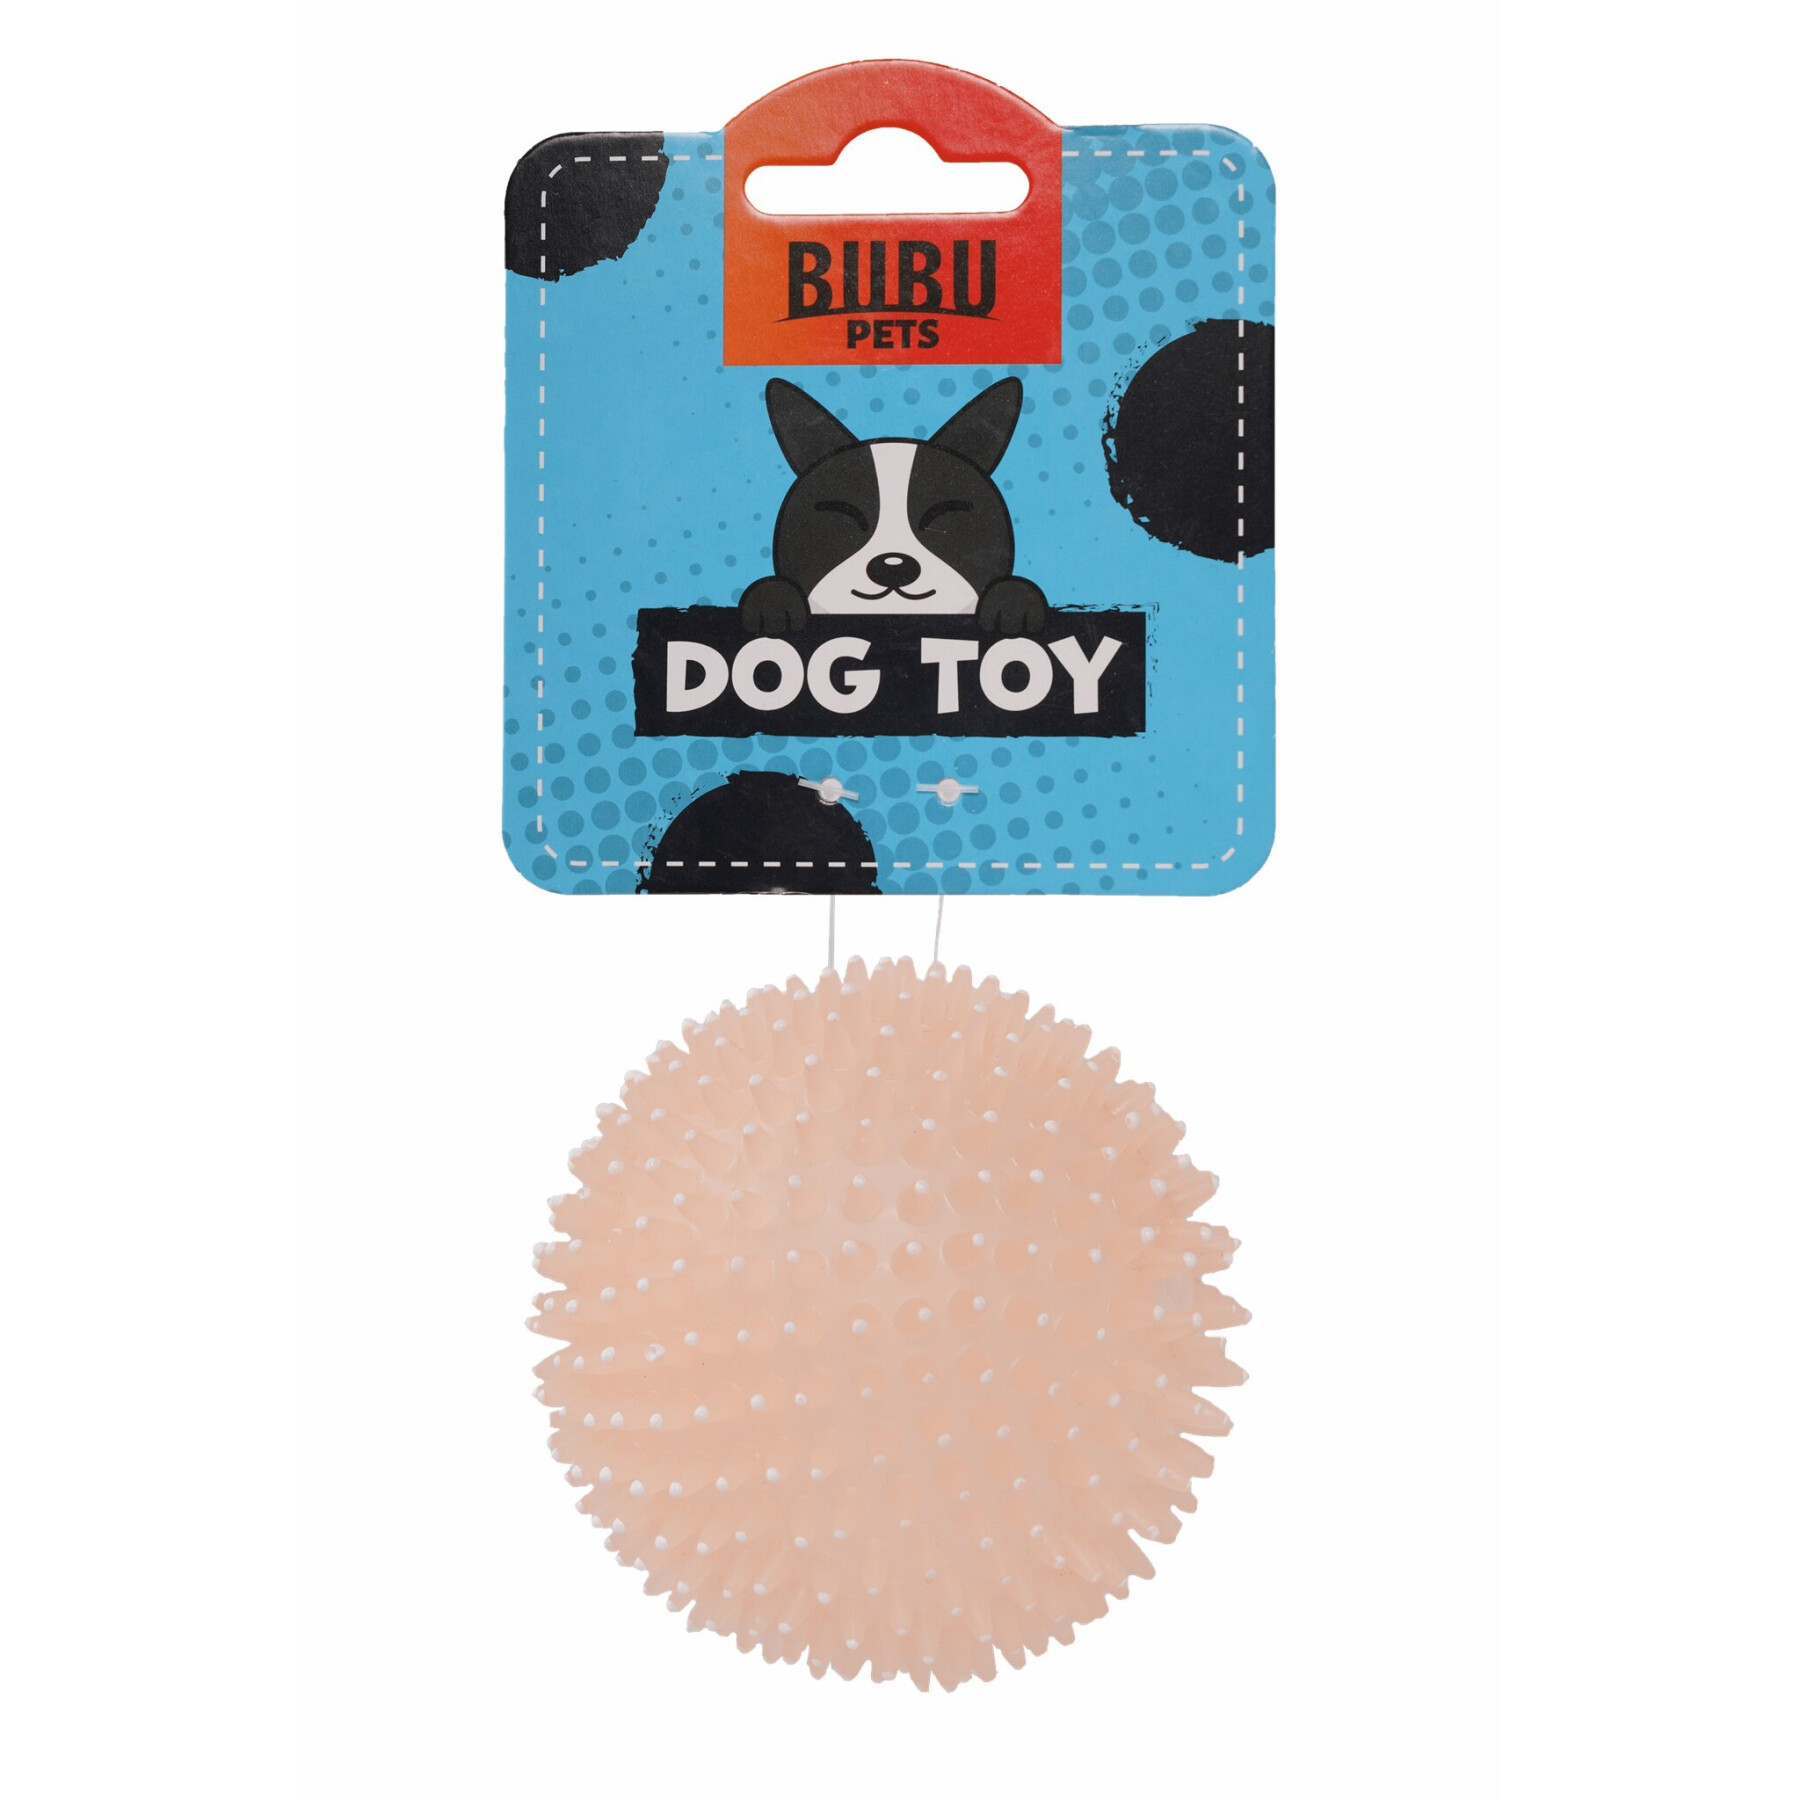 Erizo fosforescente de juguete para perros BUBU Pets